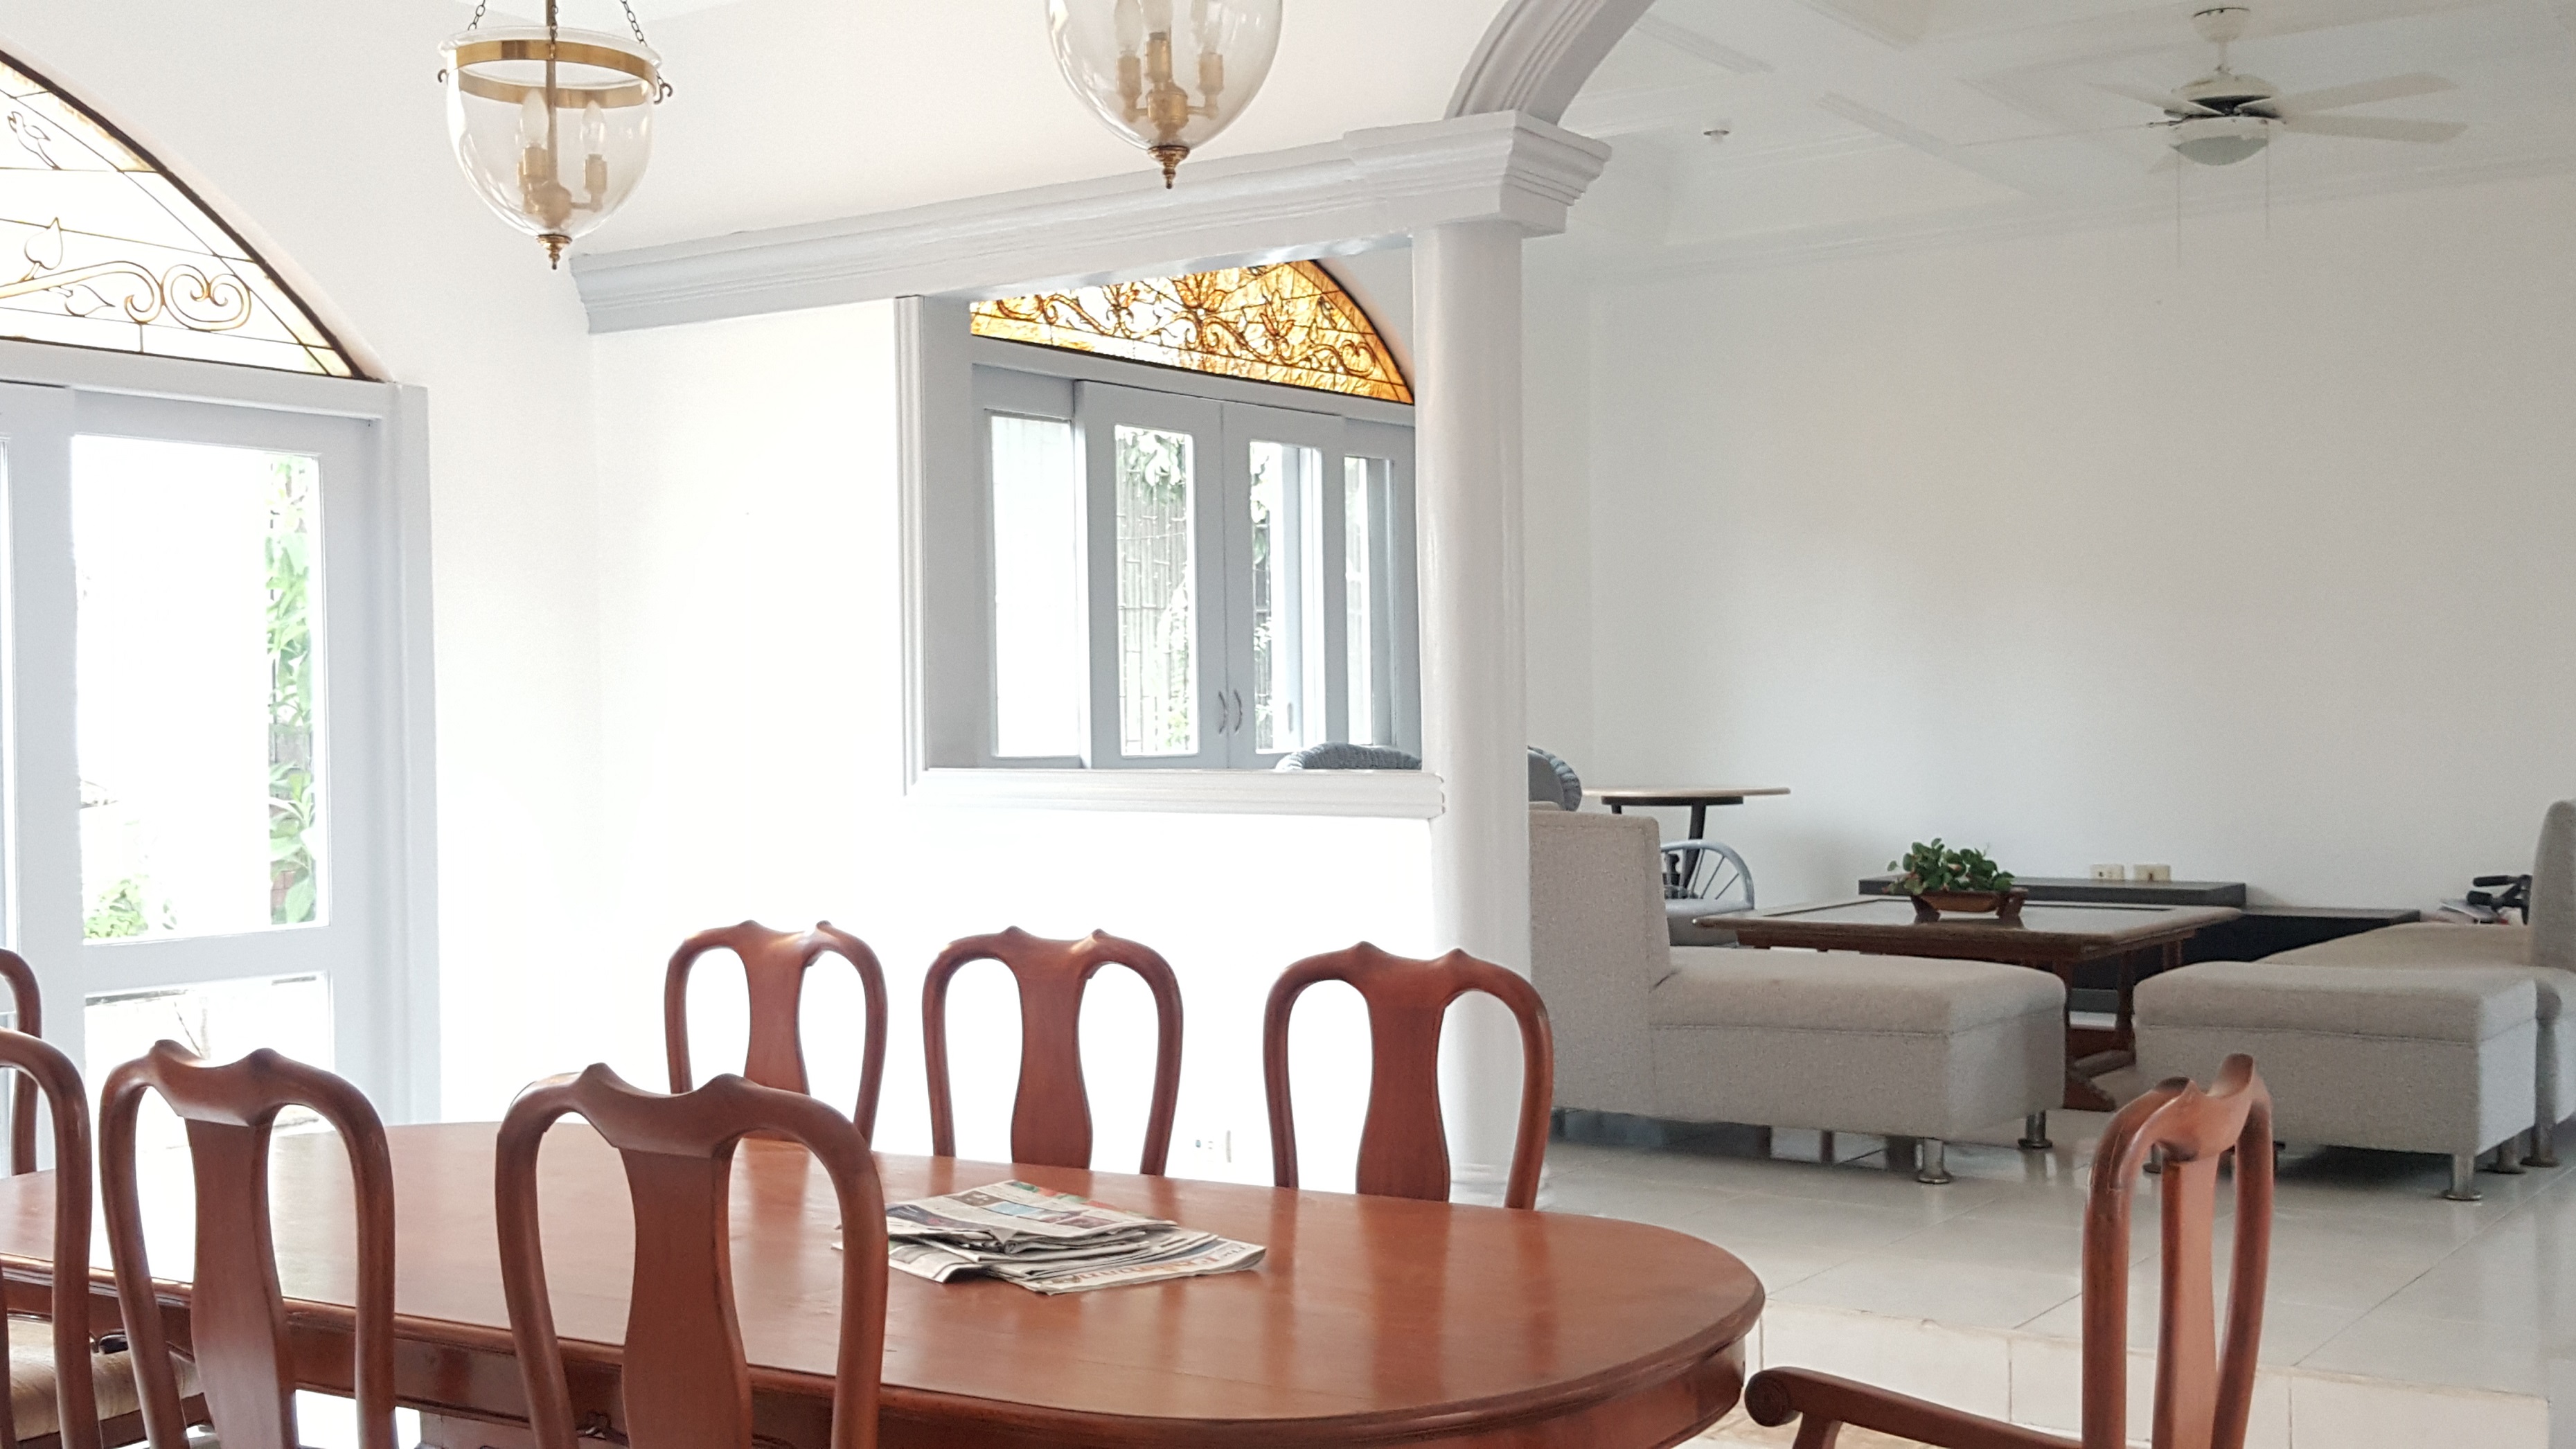 4-bedroom-furnished-house-in-banilad-cebu-city